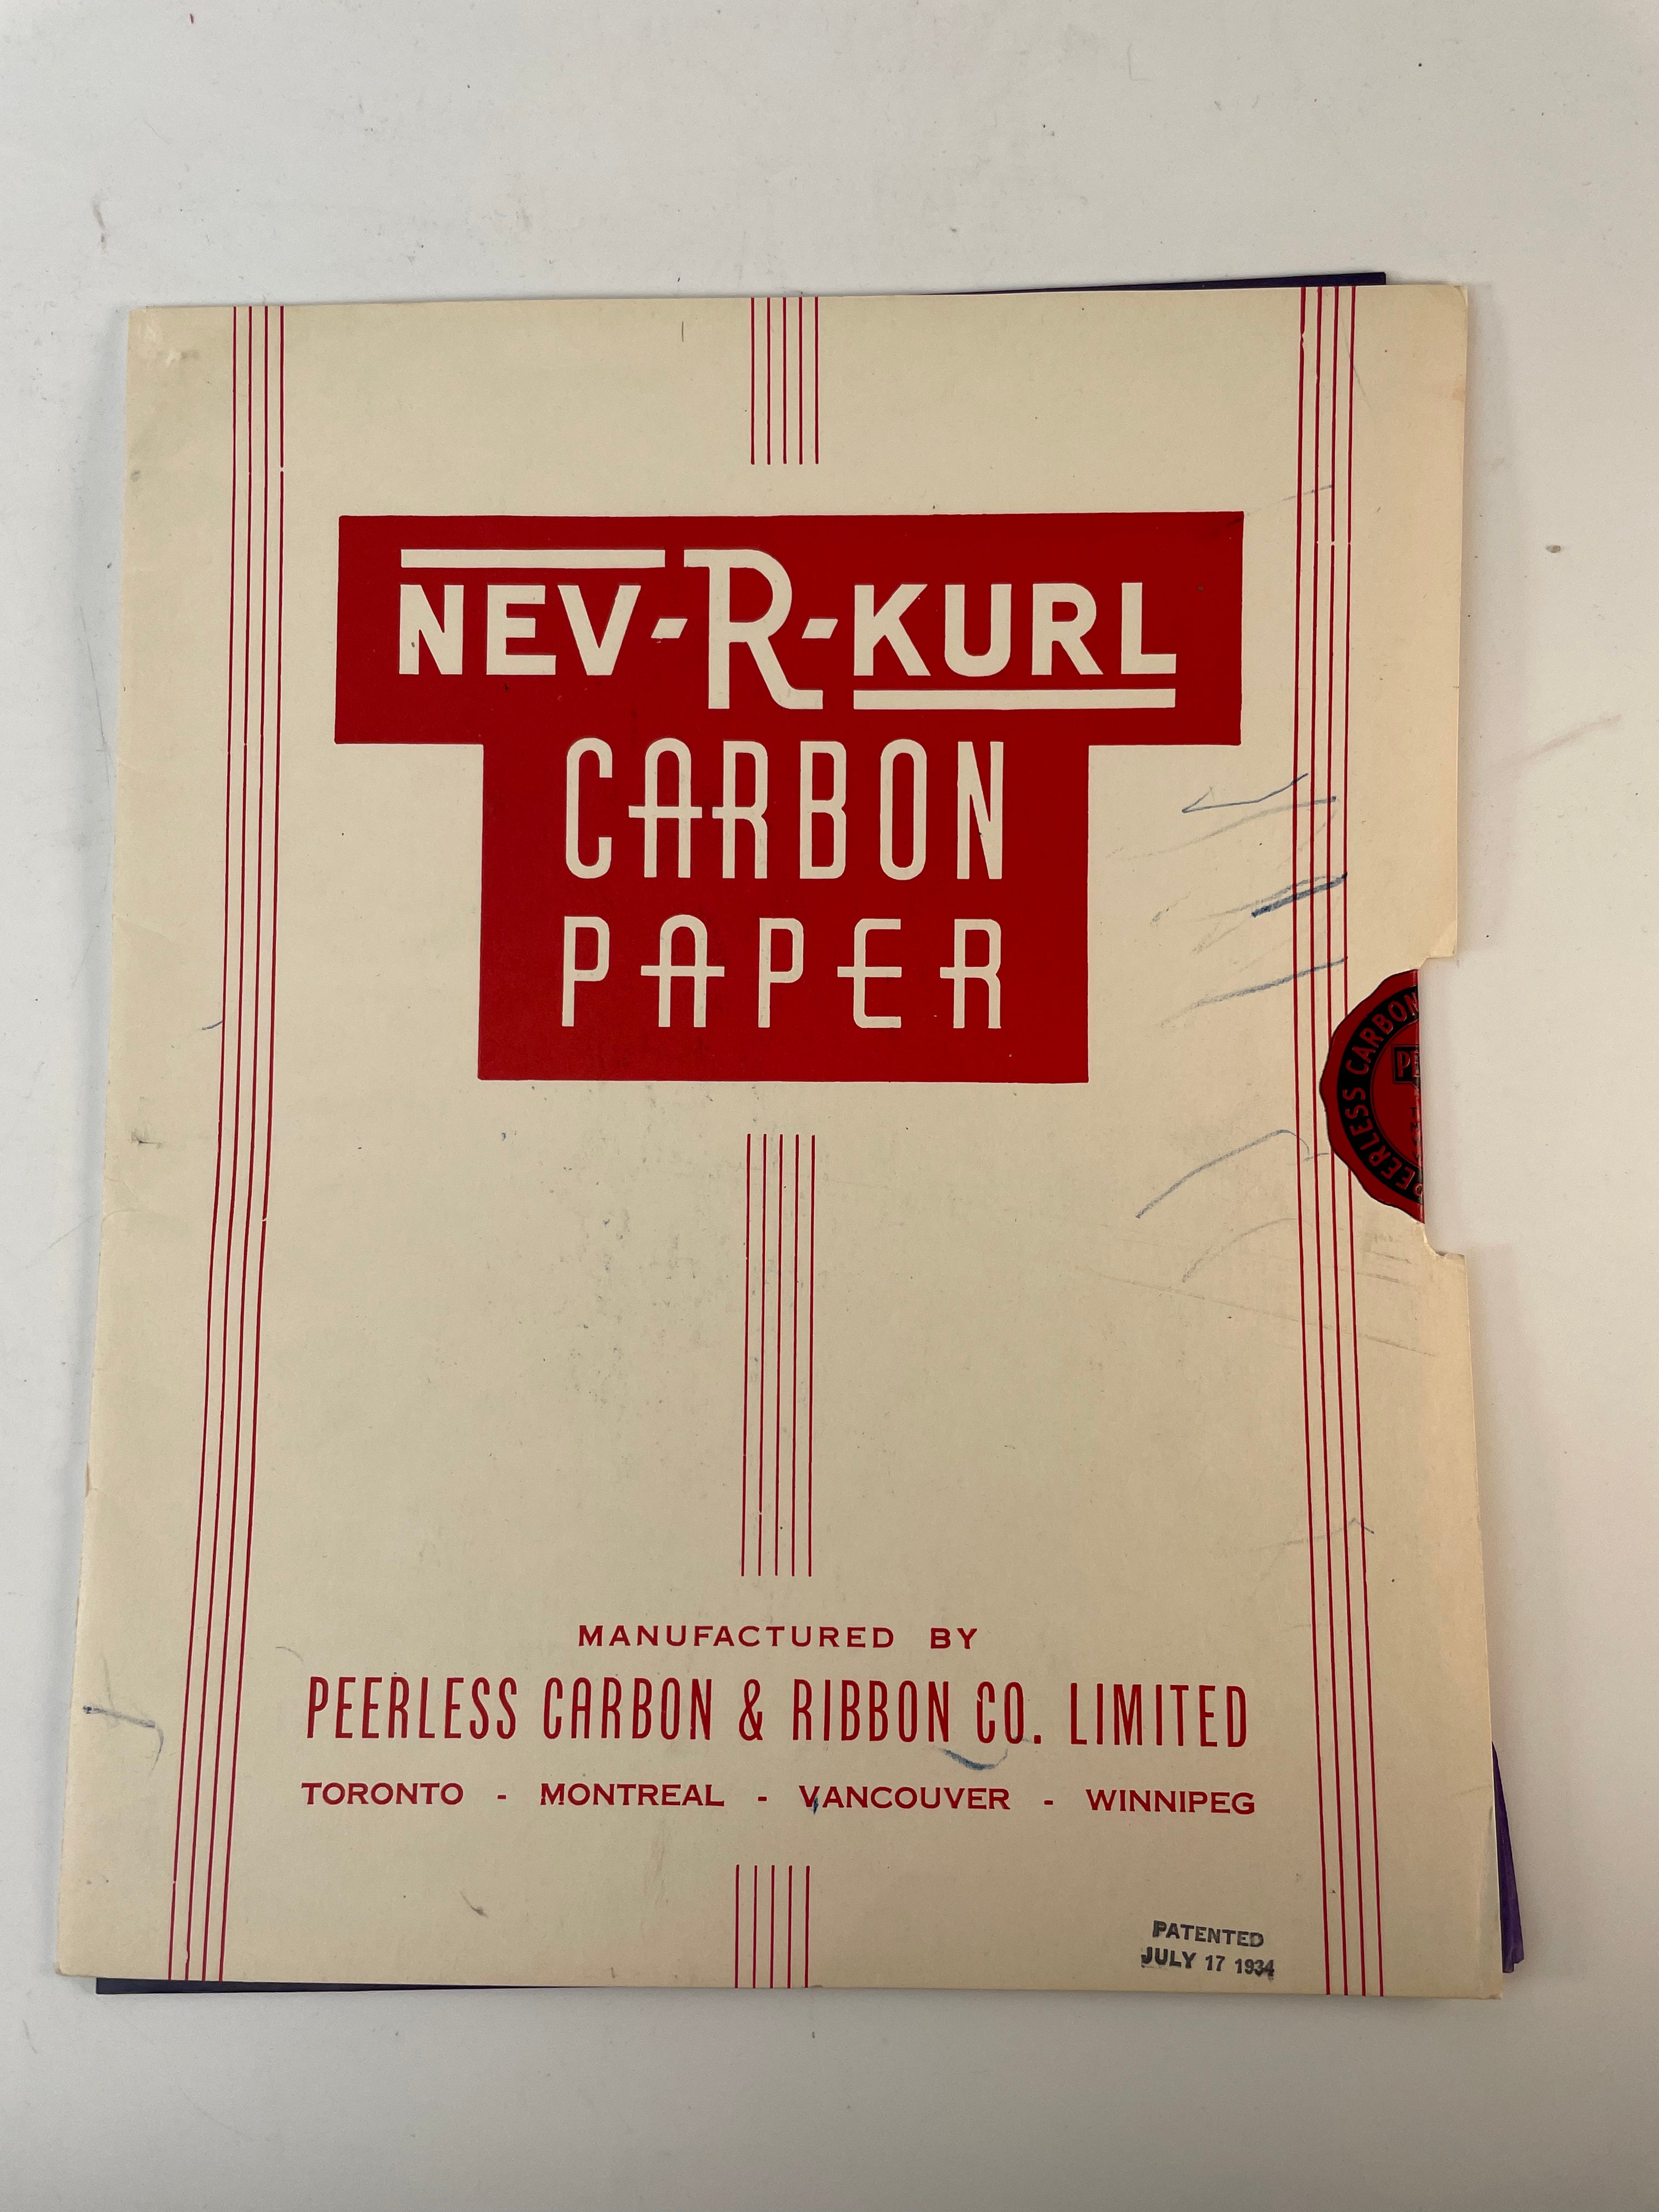 Papier carbone NEV-R-KURL, fabriqué par Peerless Carbon & Ribbon Co. Limited